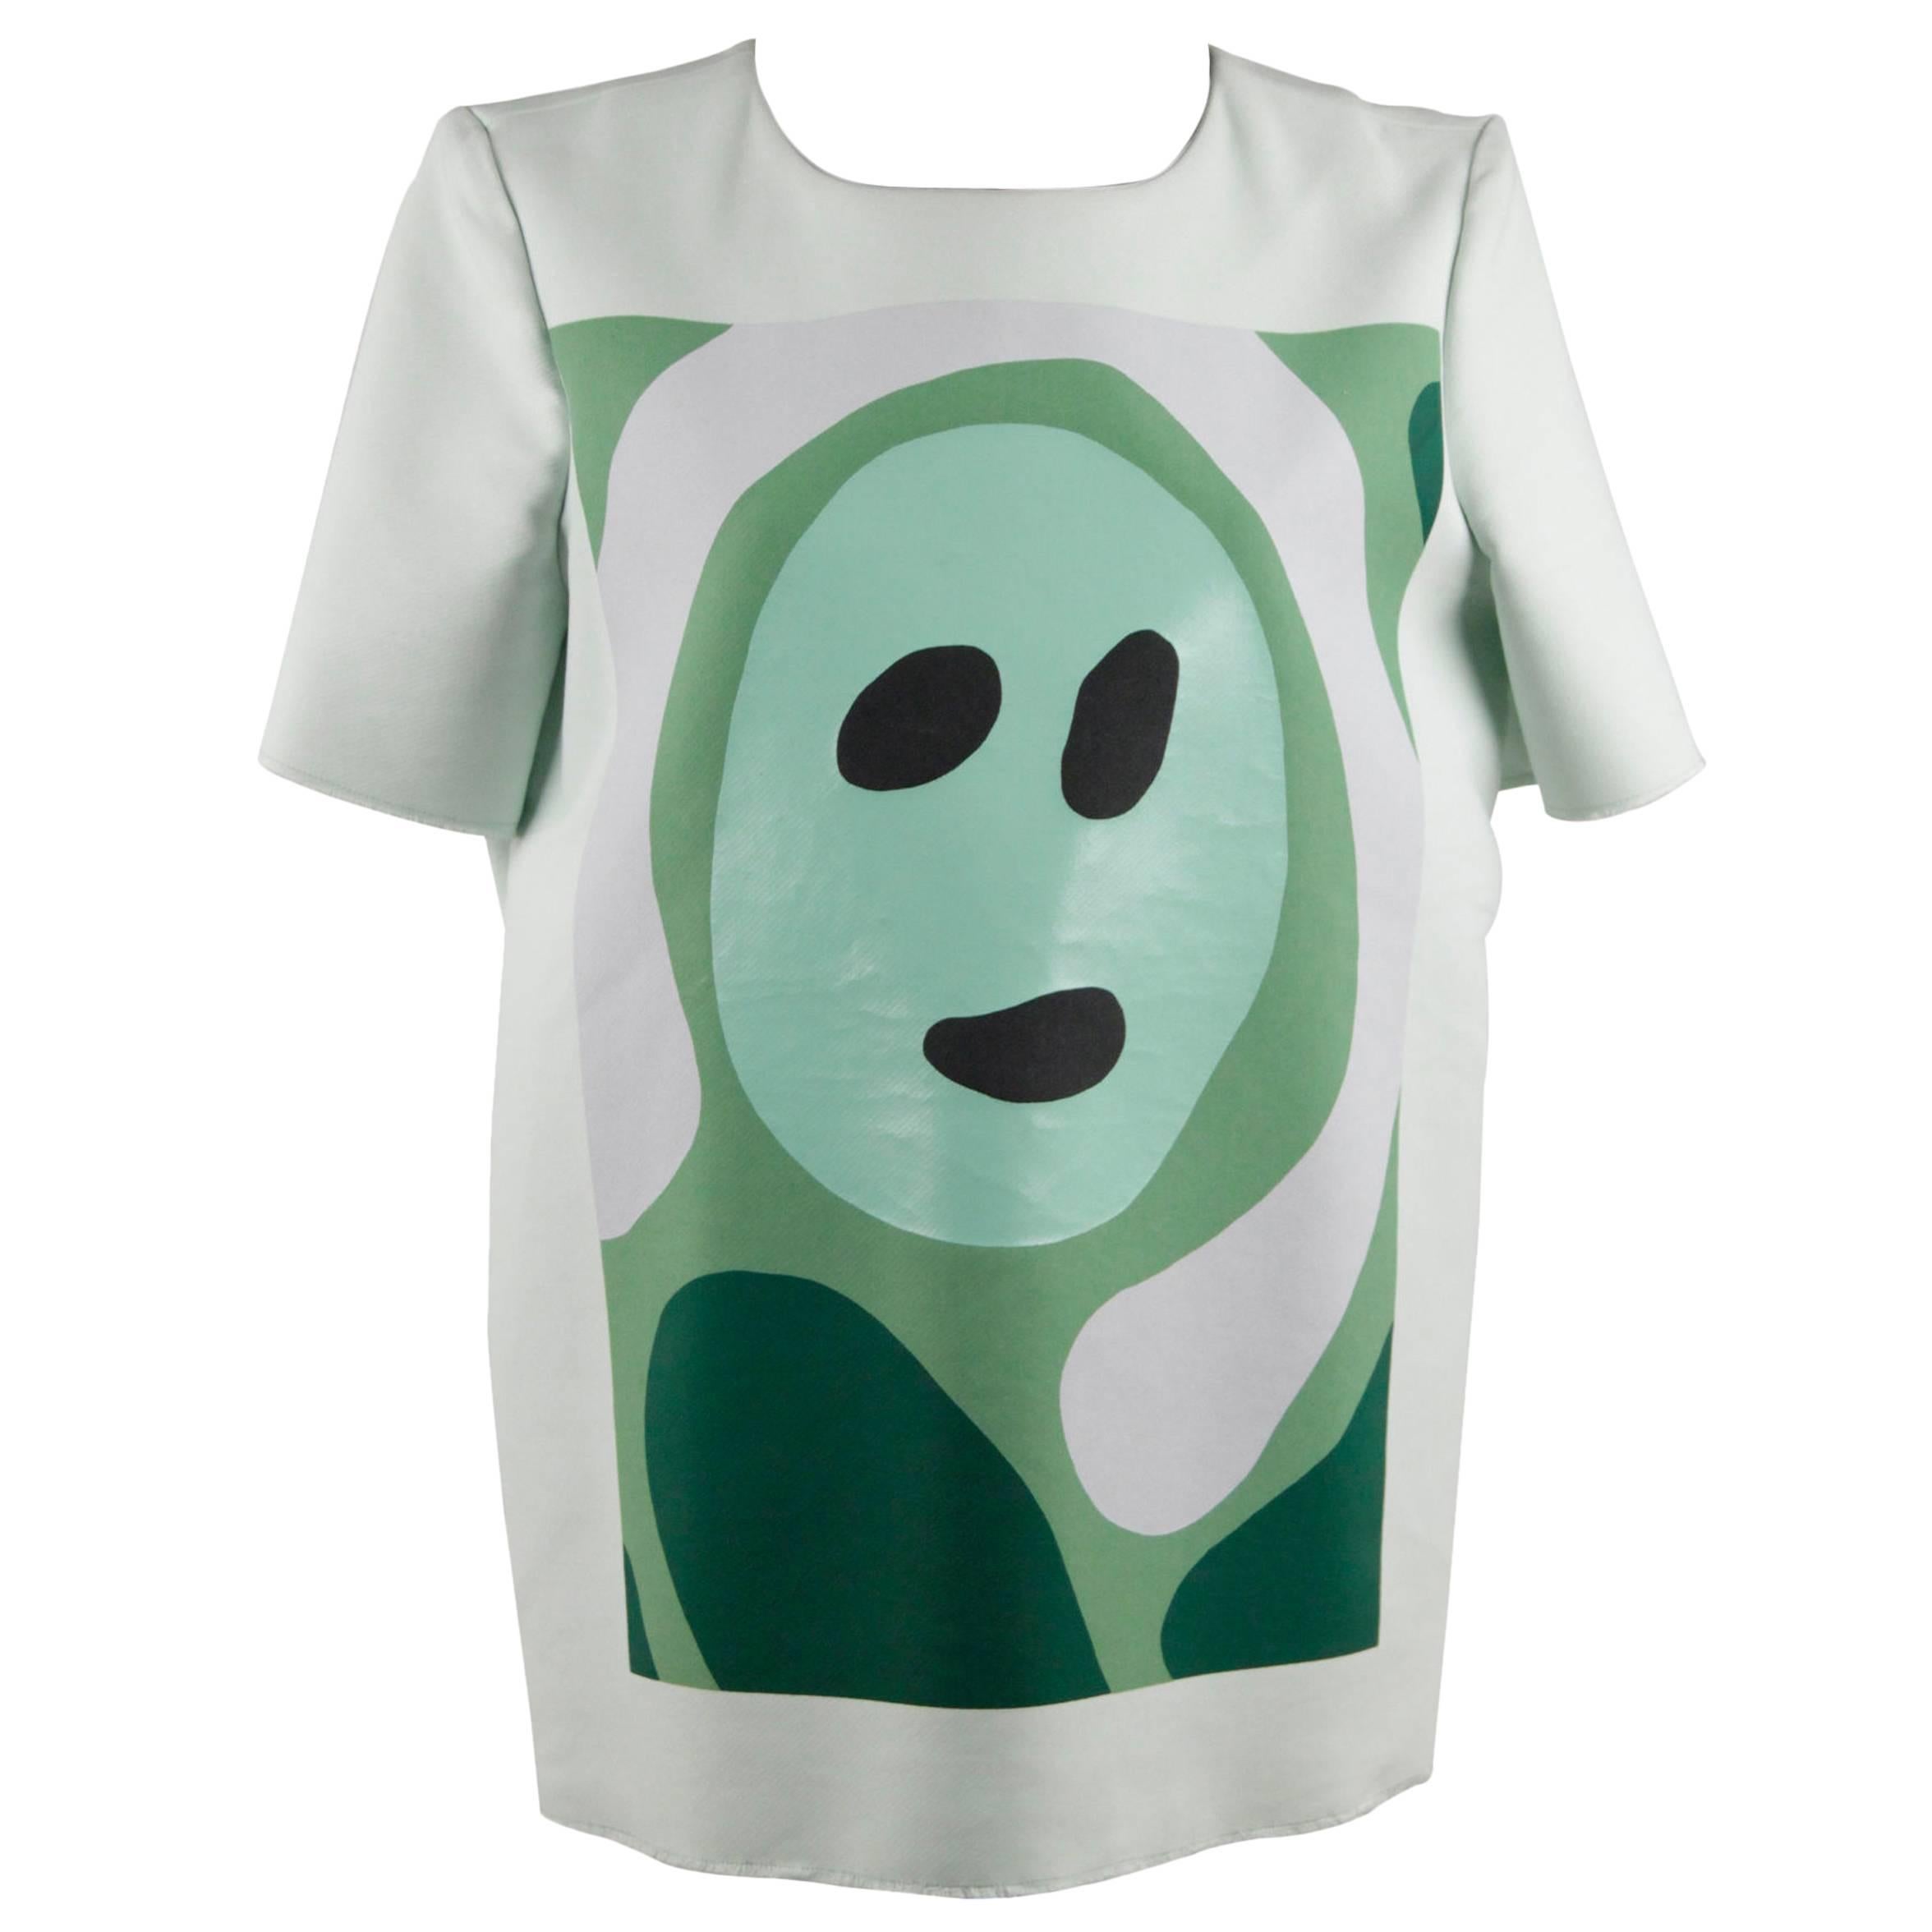 Marni Light Green Cotton Blend T Shirt Top Face Print Size 42